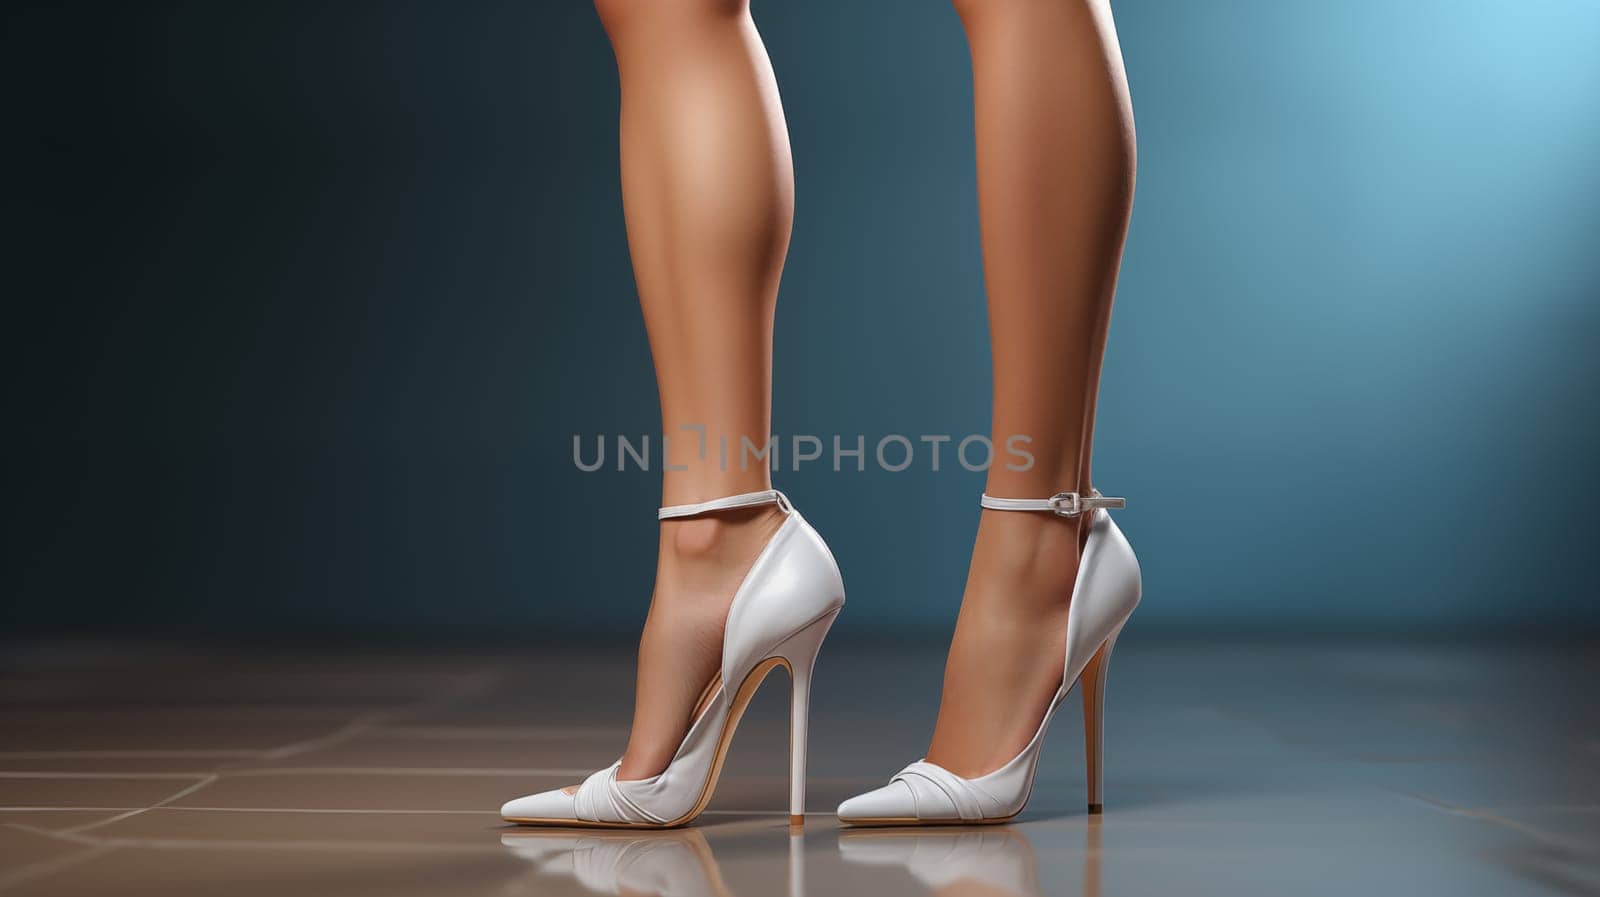 Sleek white heels adorned on slender legs, against a dark backdrop by Zakharova